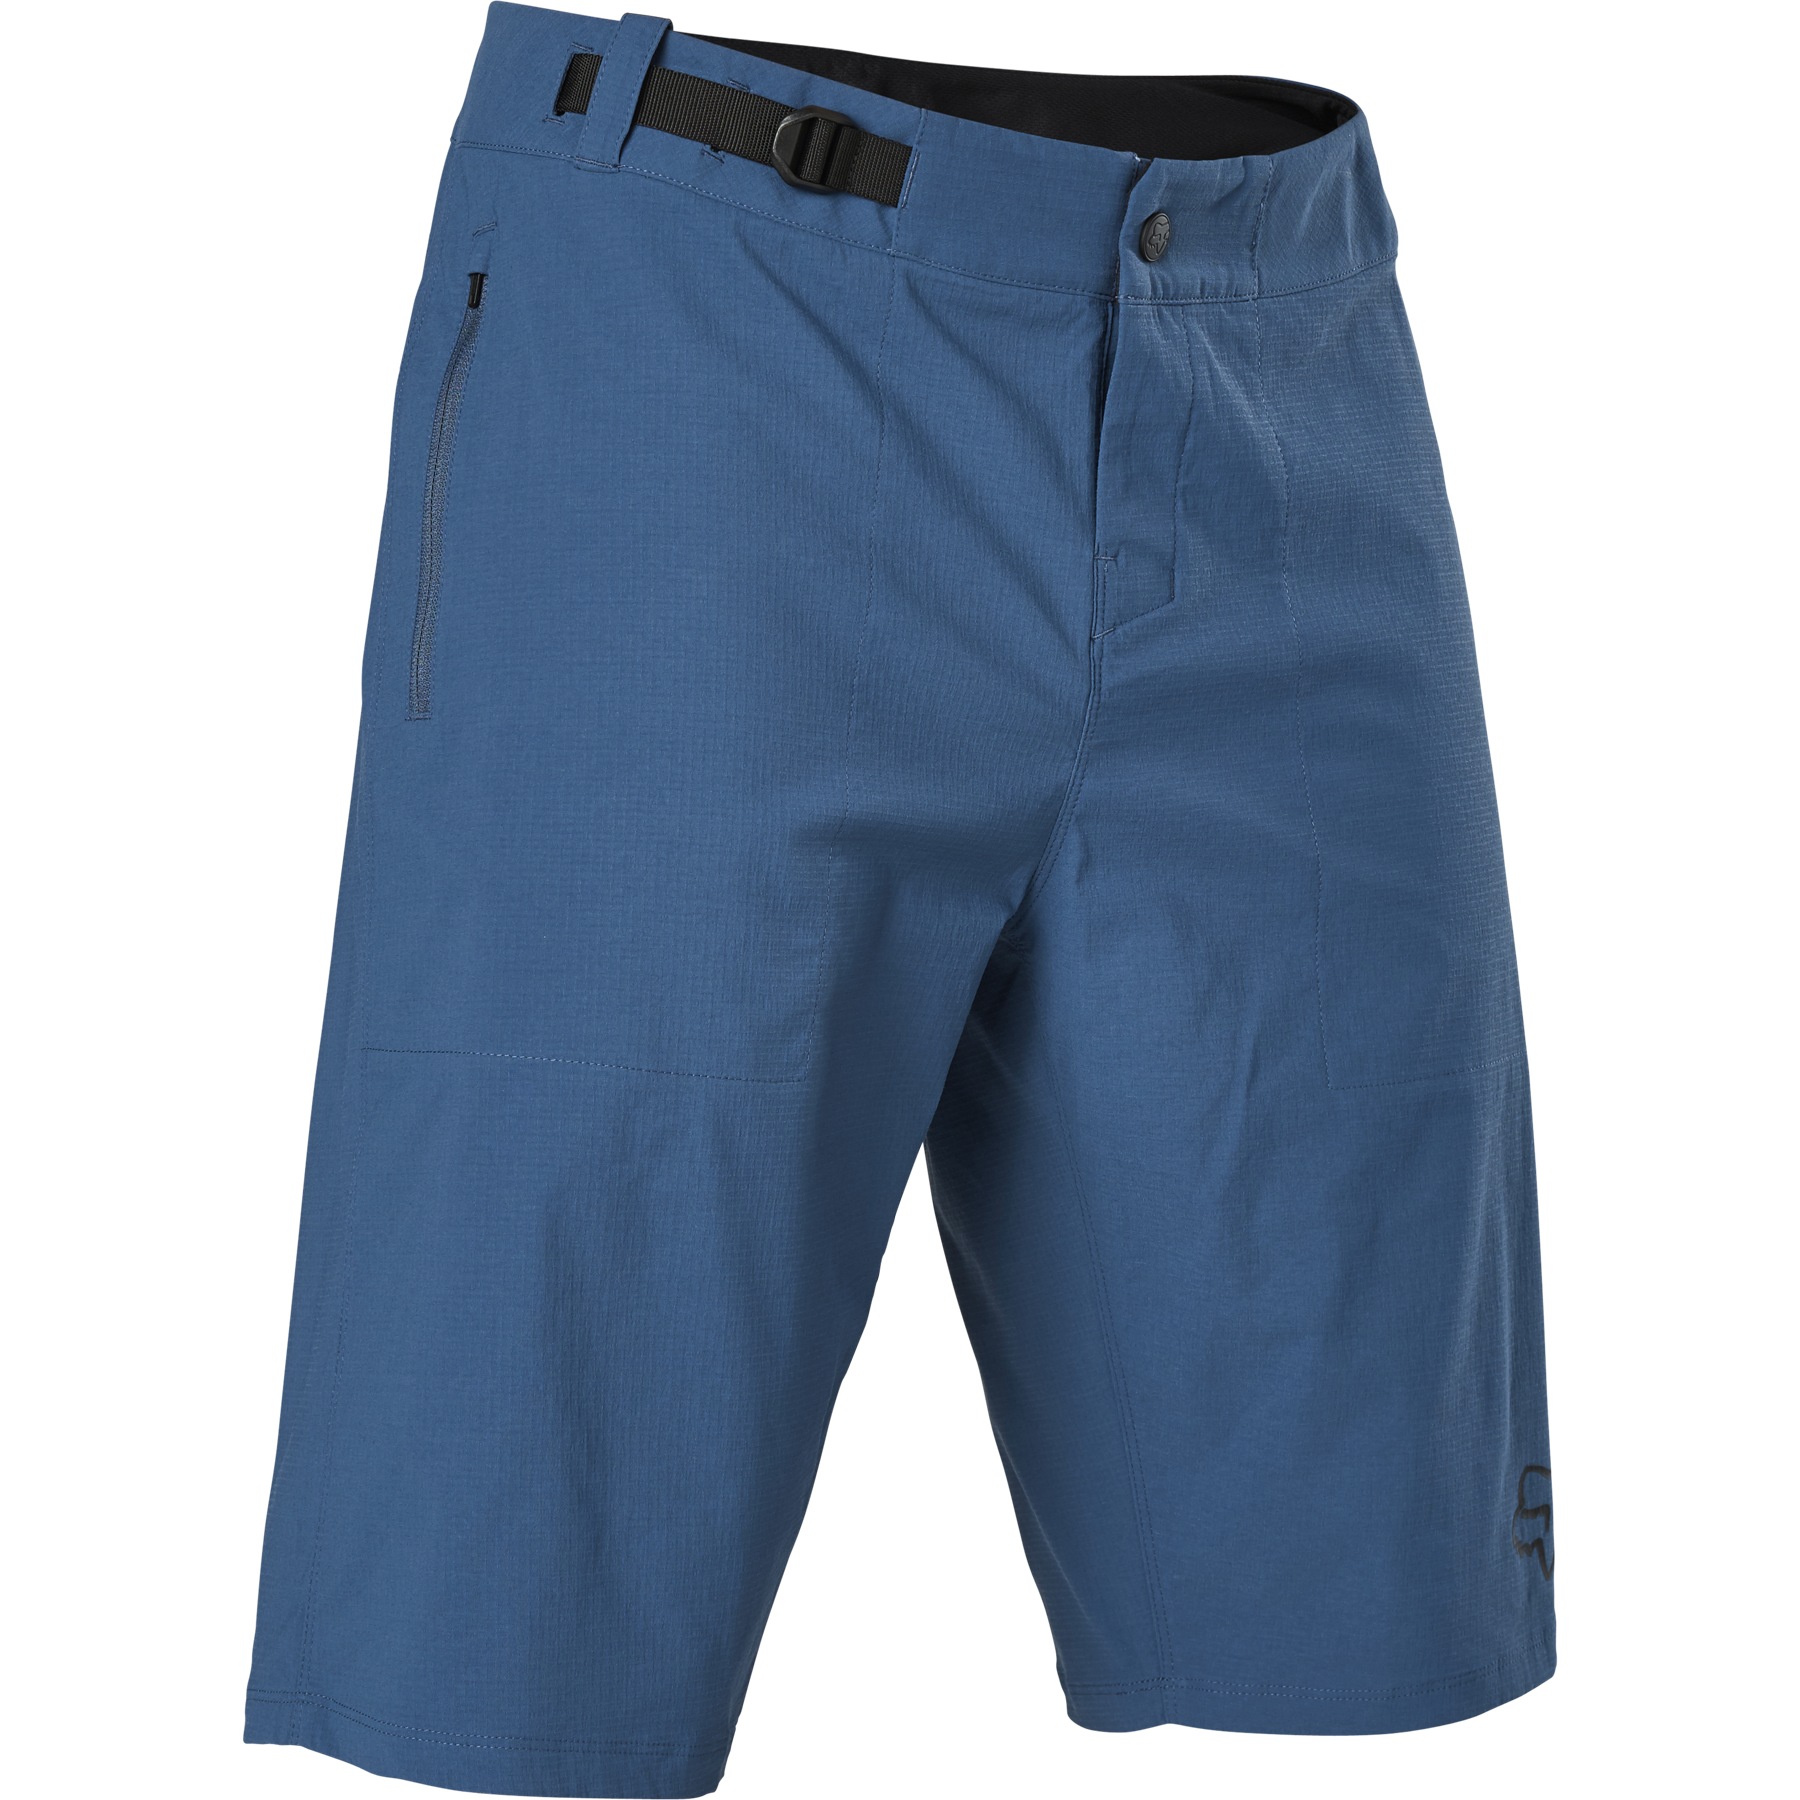 Produktbild von FOX Ranger MTB Shorts Herren - dark indigo